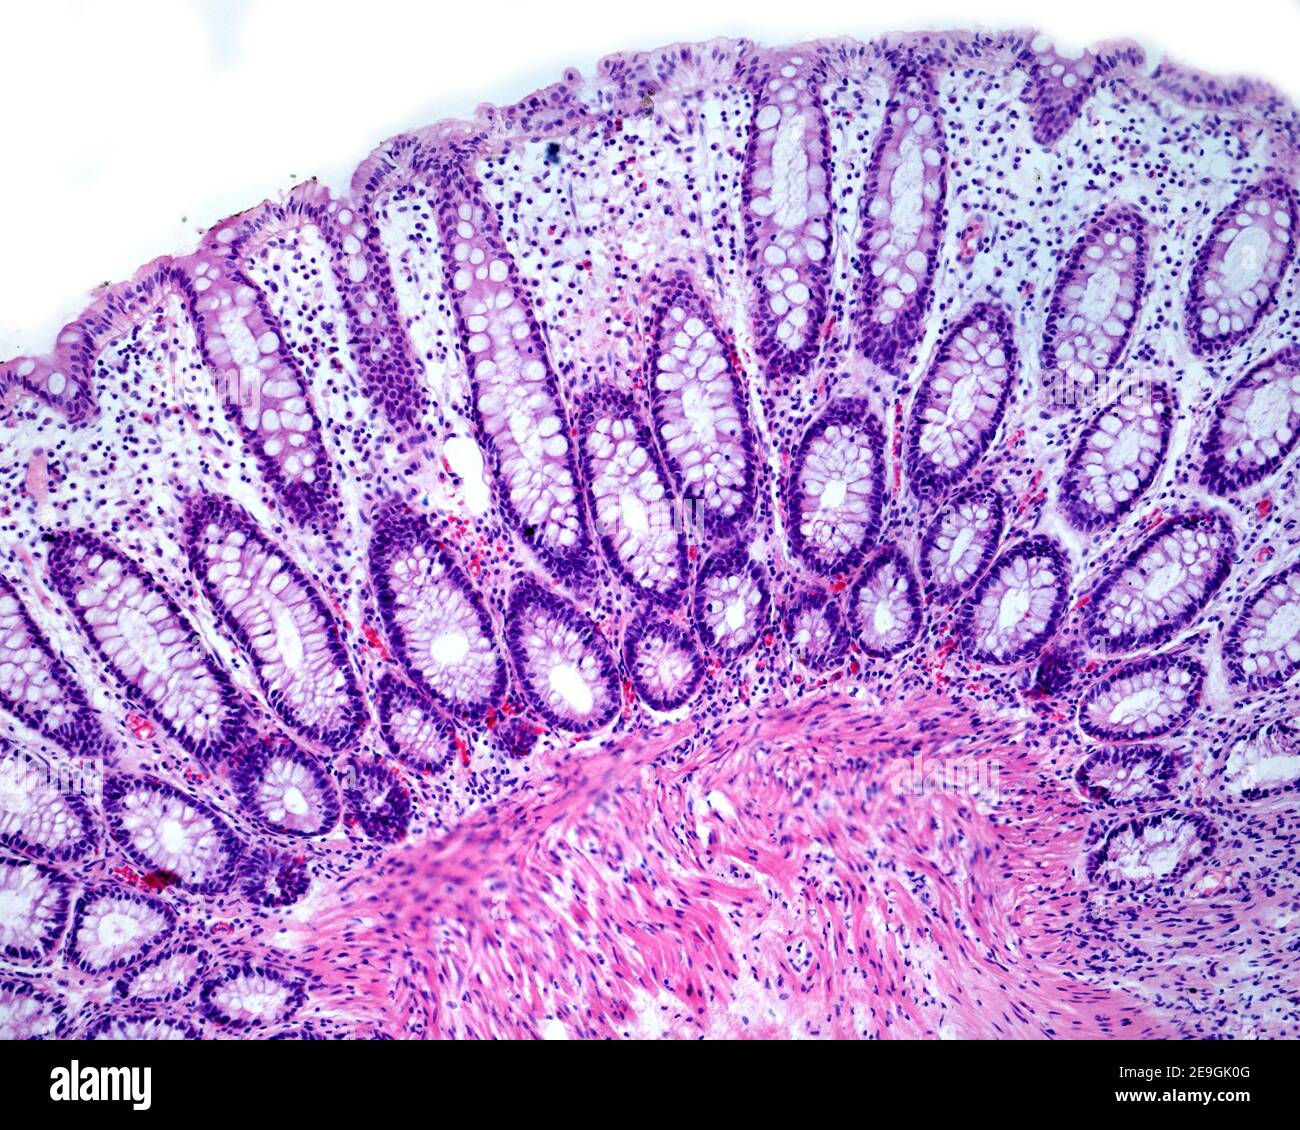 Lieberkühn cripte di una mucosa del colon umano che mostrano abbondanti cellule goblet di citoplasma pallido. Foto Stock